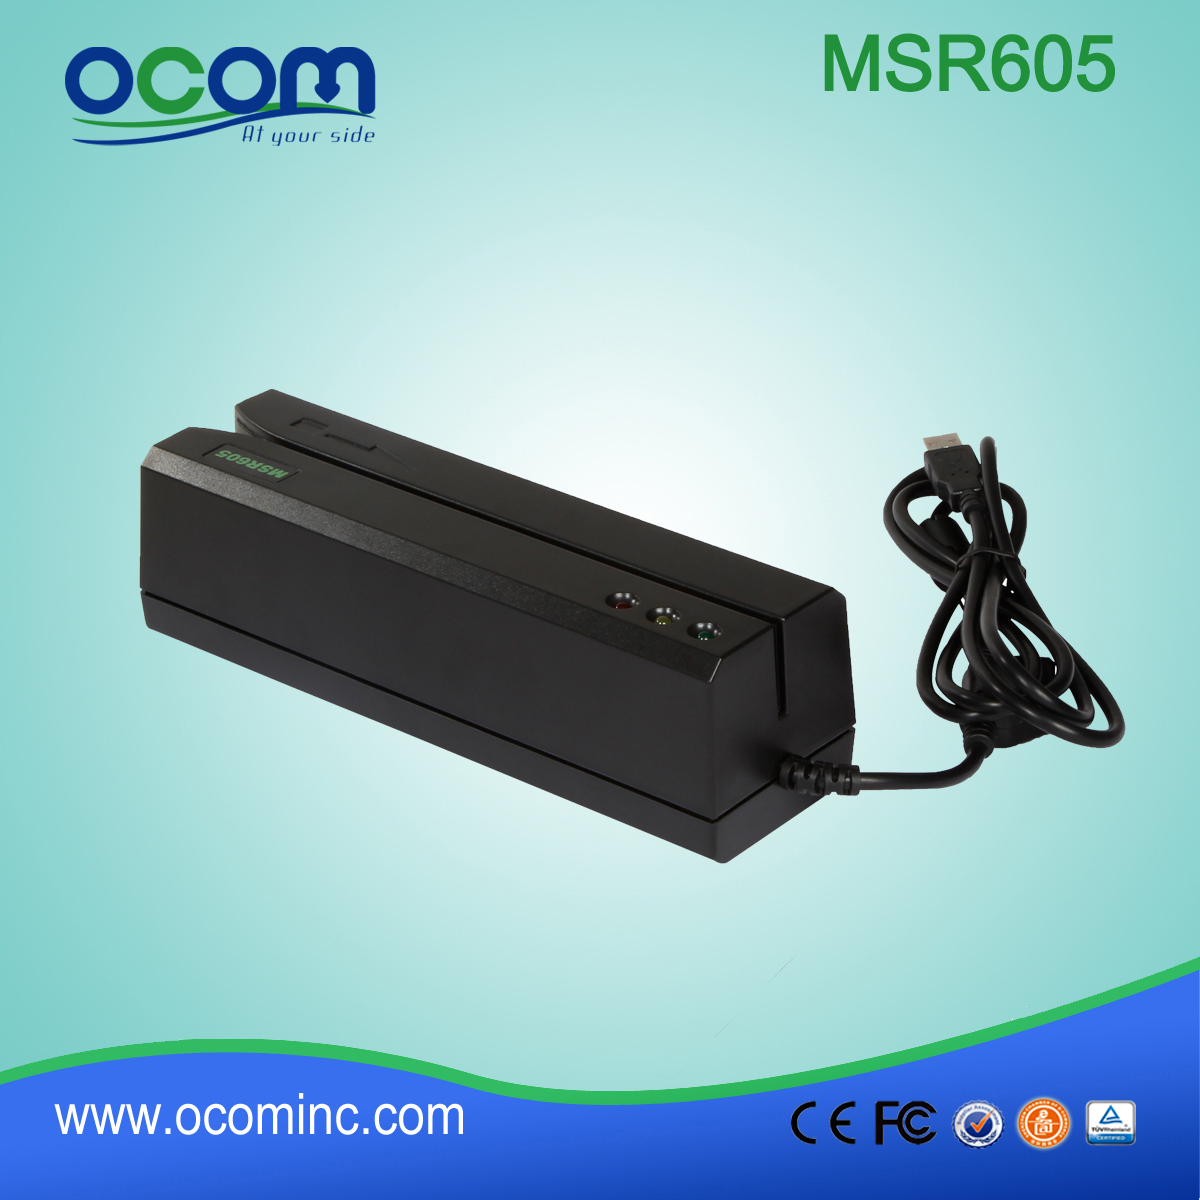 (MSR605) La Chine a fait un mini lecteur de carte et writter RS232, lecteur de carte et writter USB